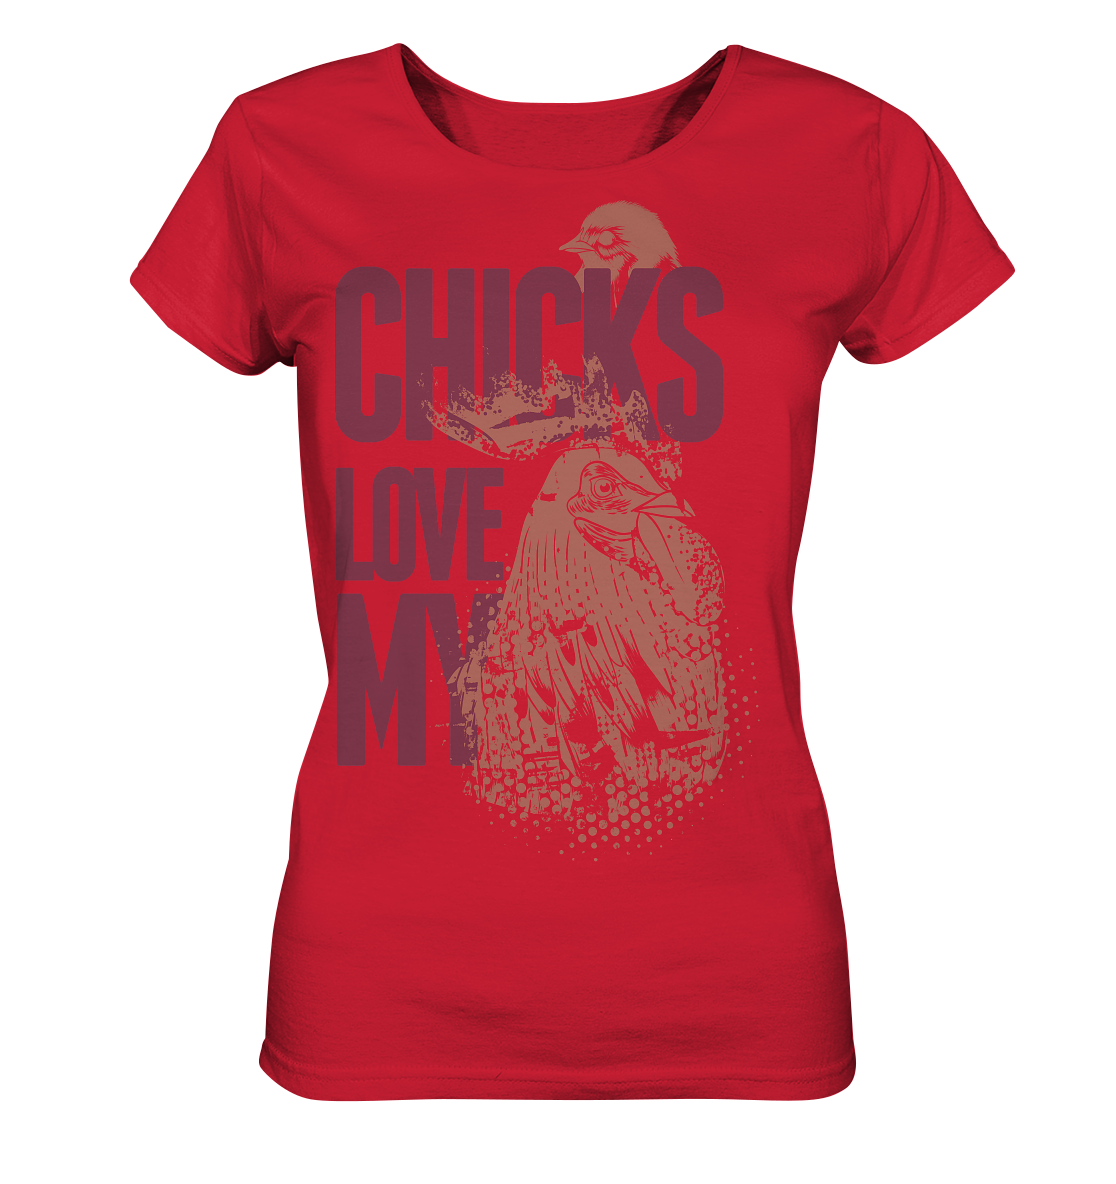 CHICKS LOVE MY - Ladies Organic Shirt